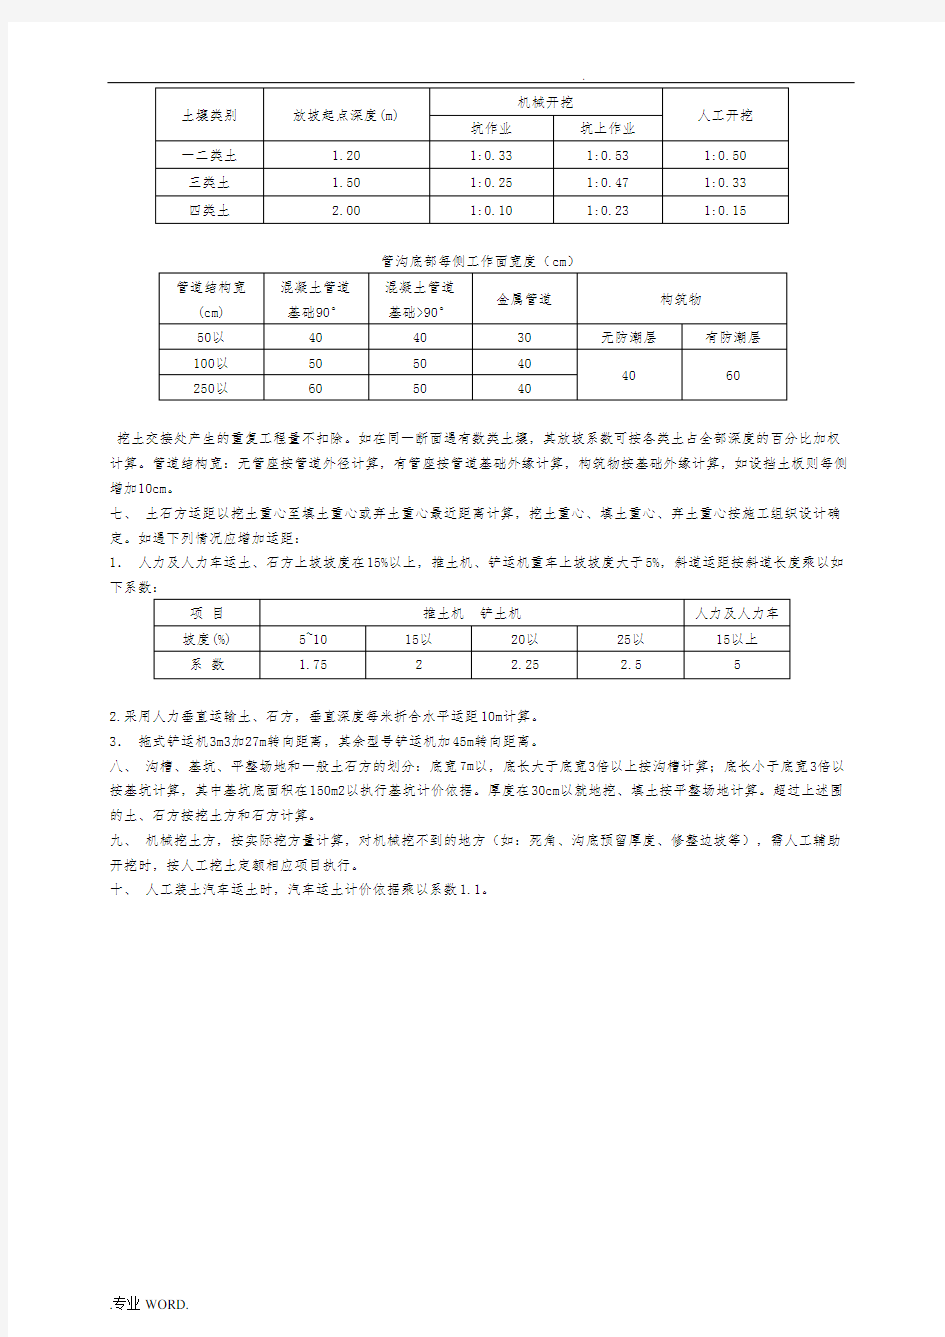 《辽宁省2008市政工程预算定额》说明及工程量计算规则全解